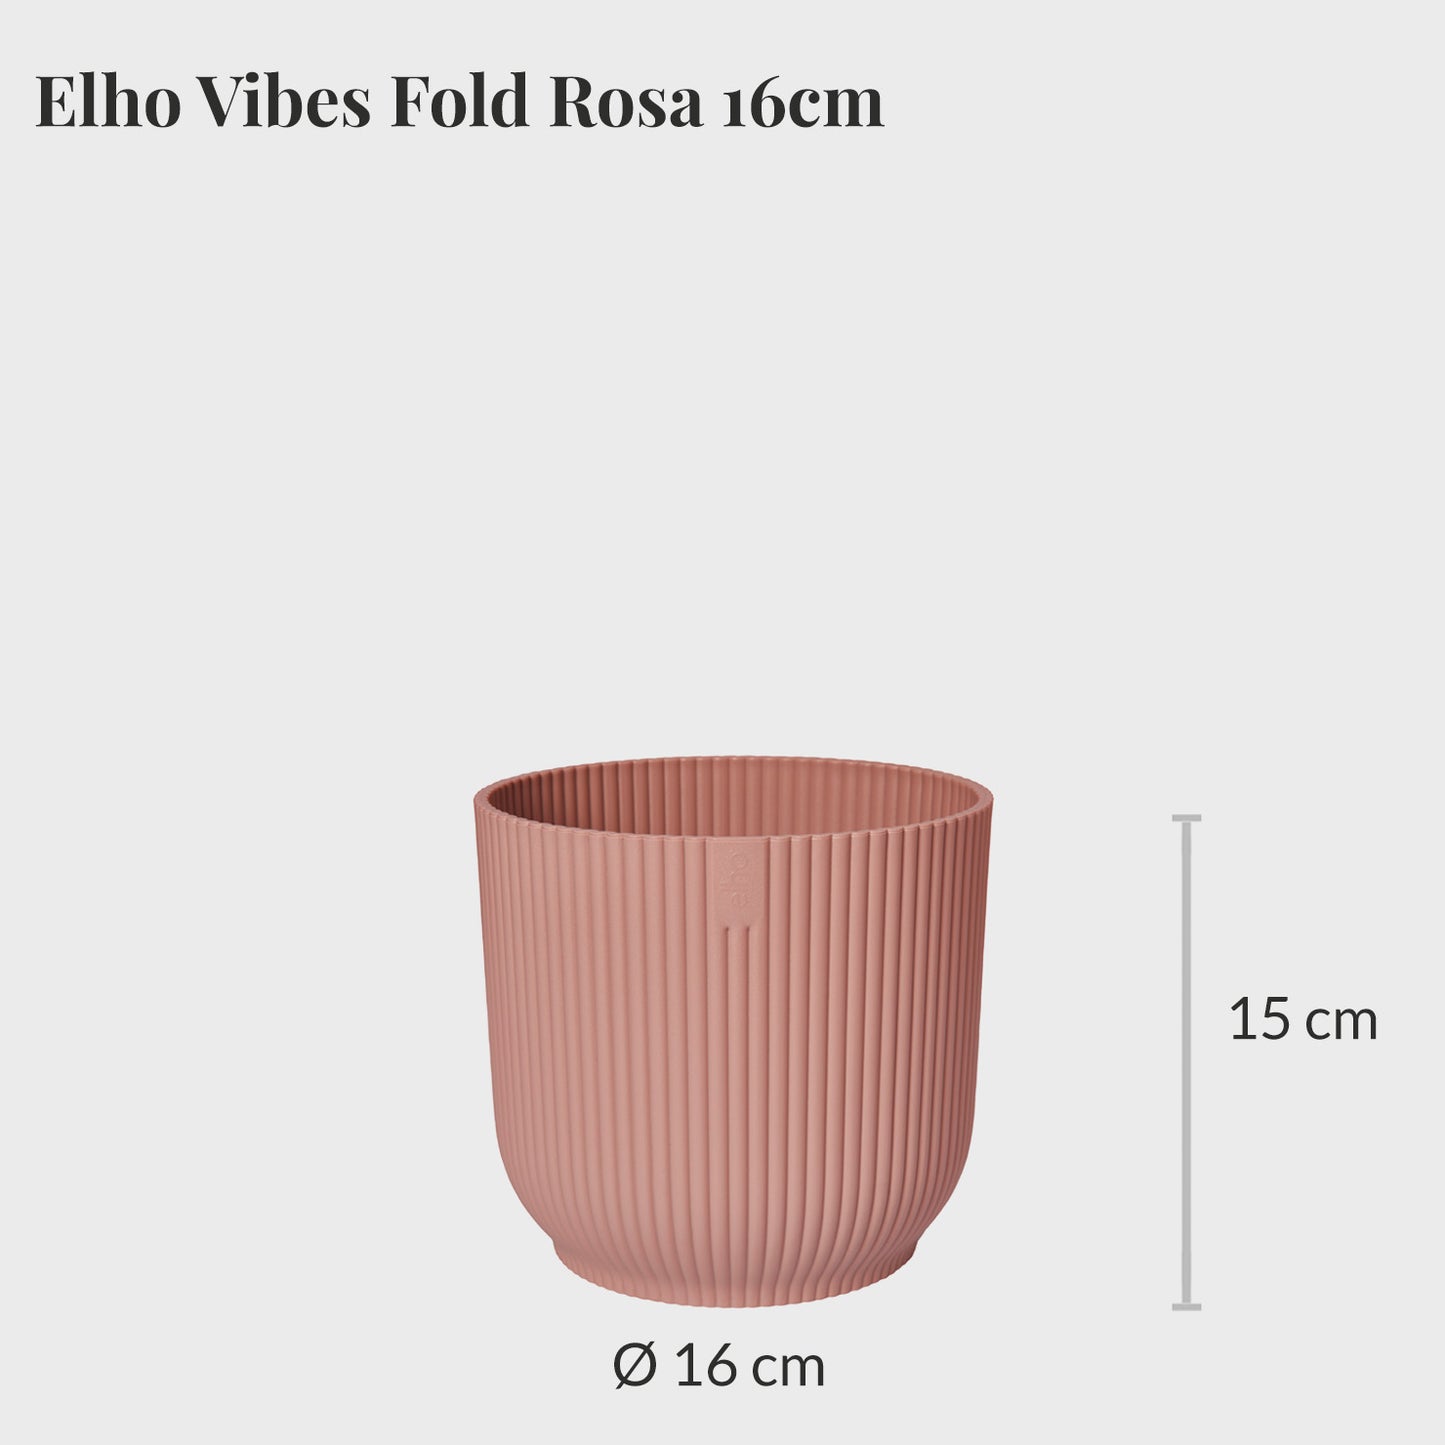 Elho Vibes Fold 16cm